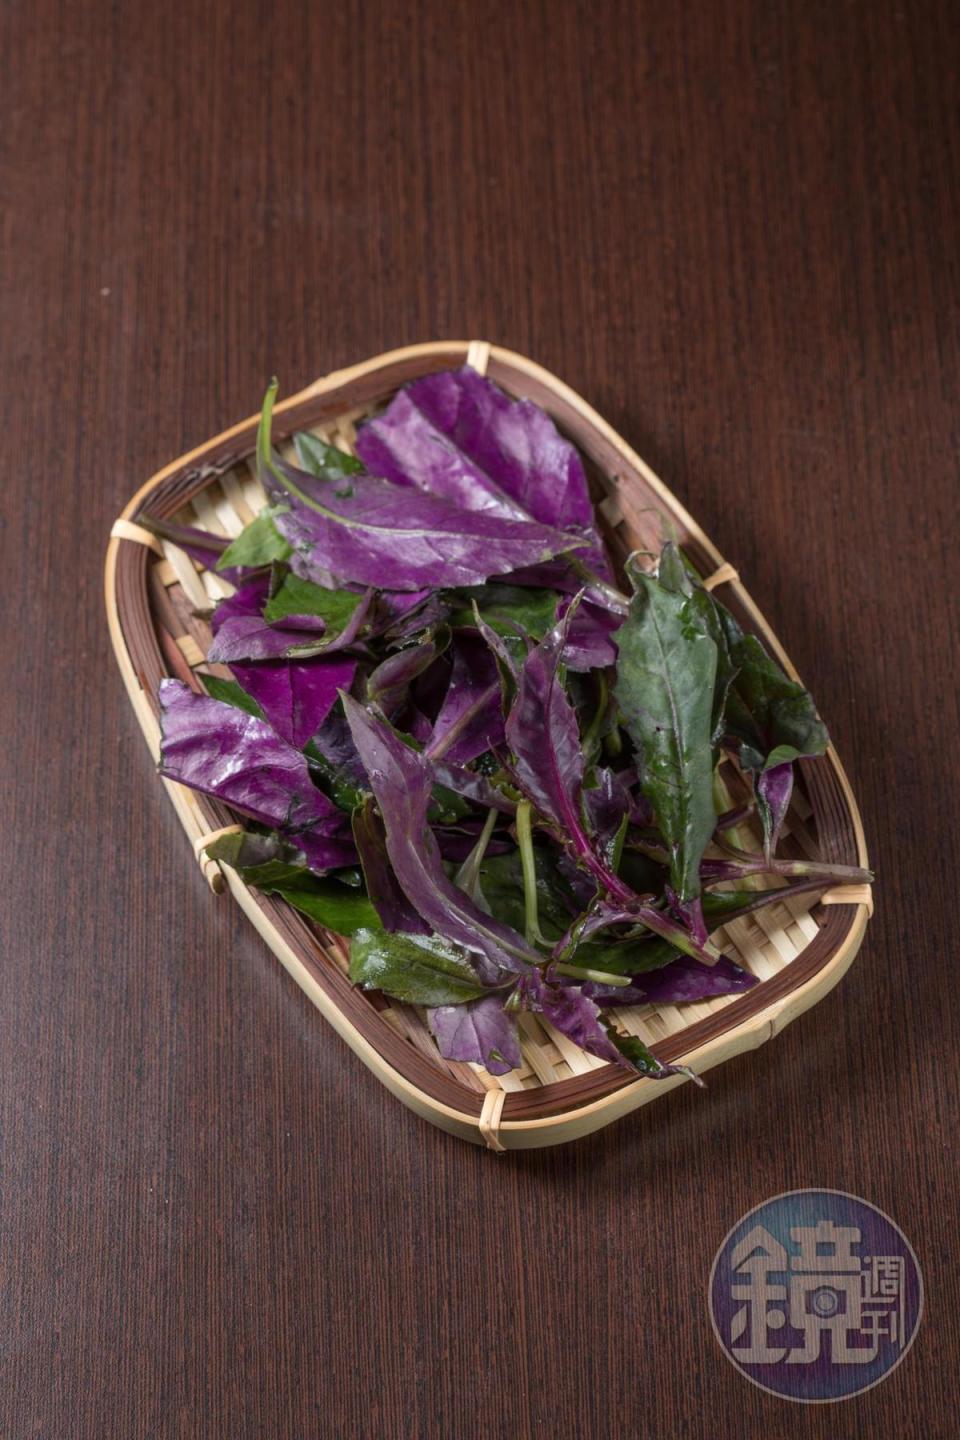 菊科的「紅鳳菜」葉背紫紅，草香濃郁，早期認為是補血佳品。